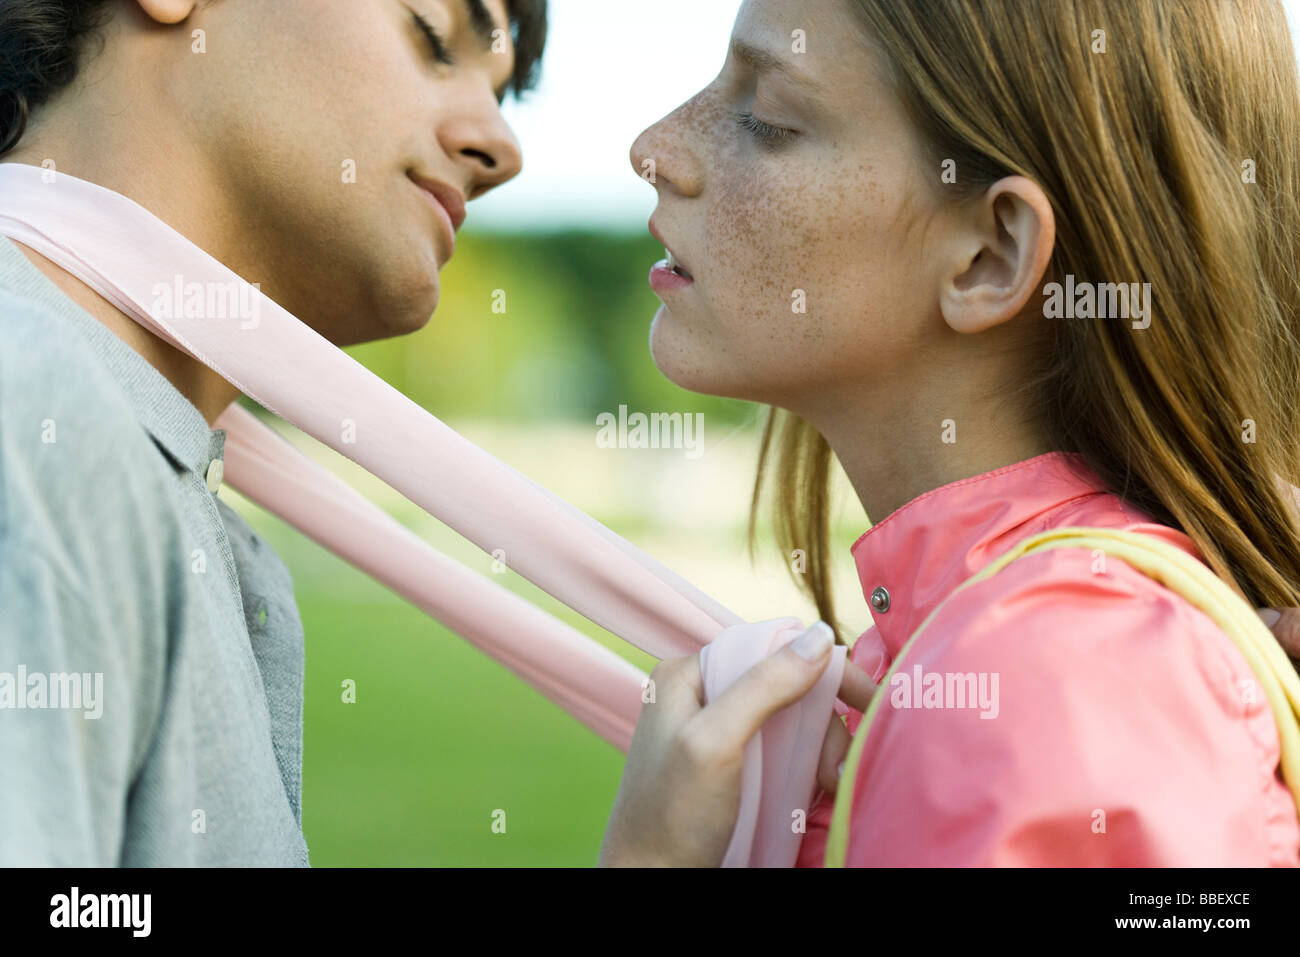 Junges Paar lehnt in zu küssen, Augen geschlossen, seitliche Ansicht Stockfoto